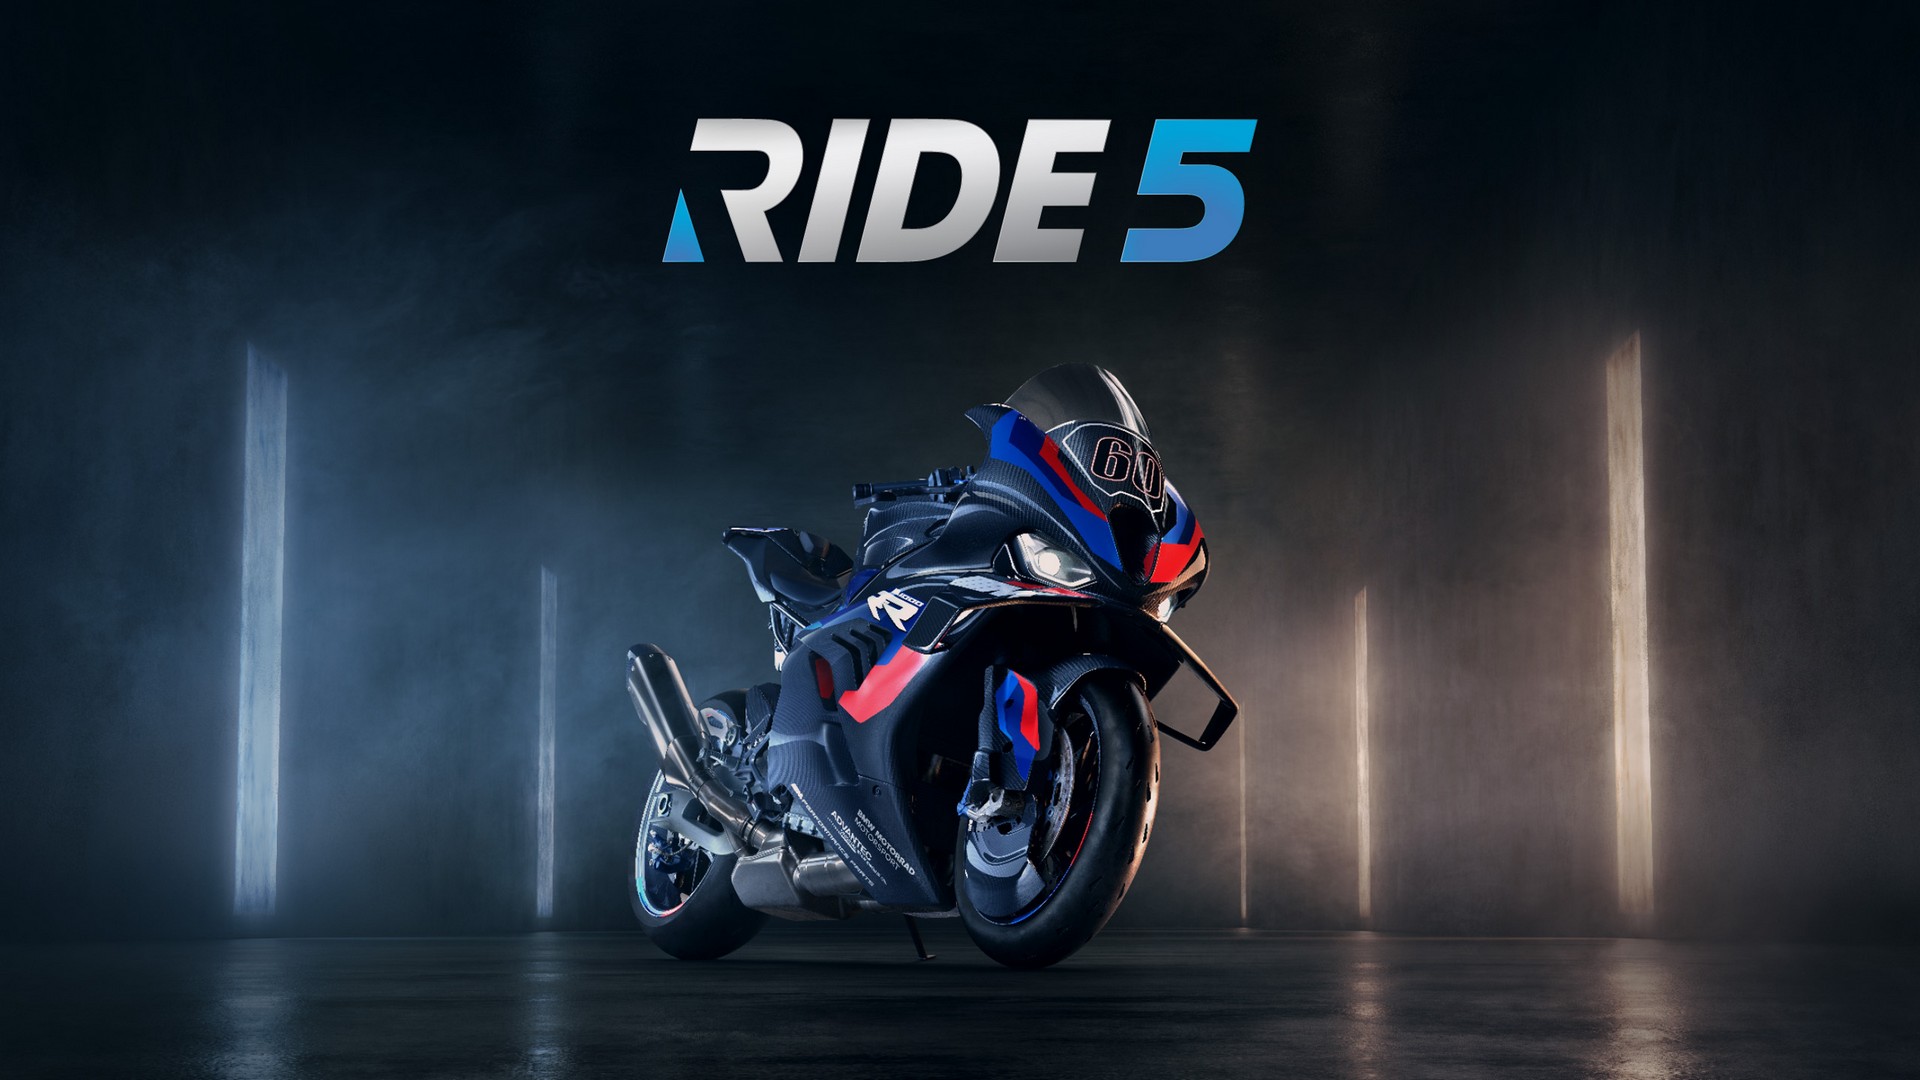 Milestone Announces The Release Of RIDE 5